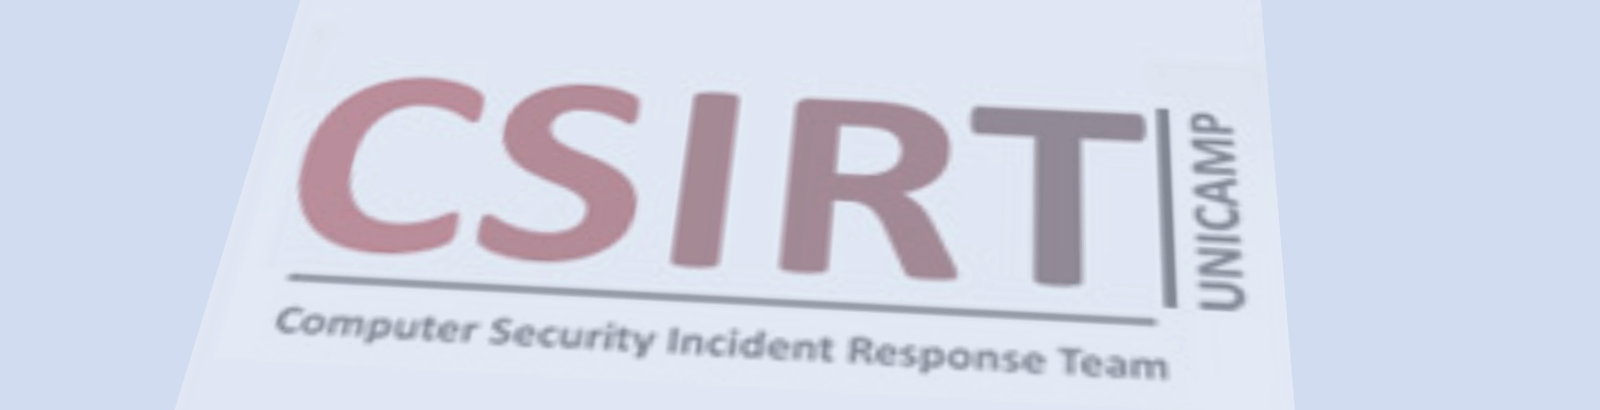 CSIRT promove palestras sobre segurança da informação